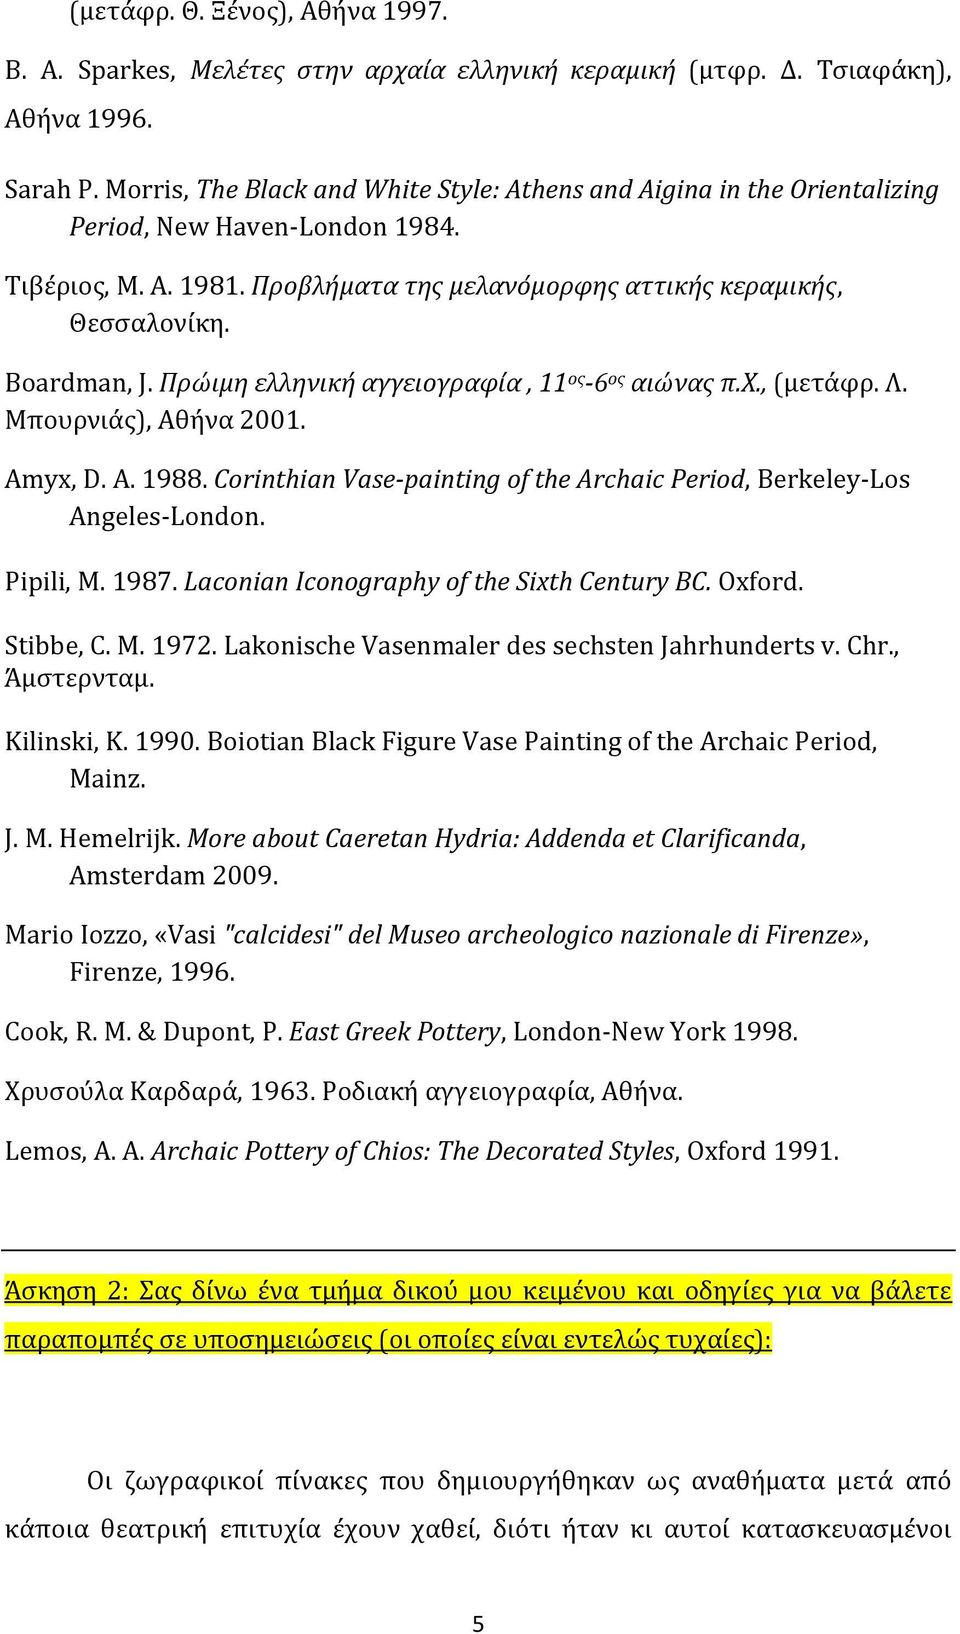 Πρώιμη ελληνική αγγειογραφία, 11 ος -6 ος αιώνας π.χ., (μετάφρ. Λ. Μπουρνιάς), Αθήνα 2001. Amyx, D. A. 1988. Corinthian Vase-painting of the Archaic Period, Berkeley-Los Angeles-London. Pipili, M.